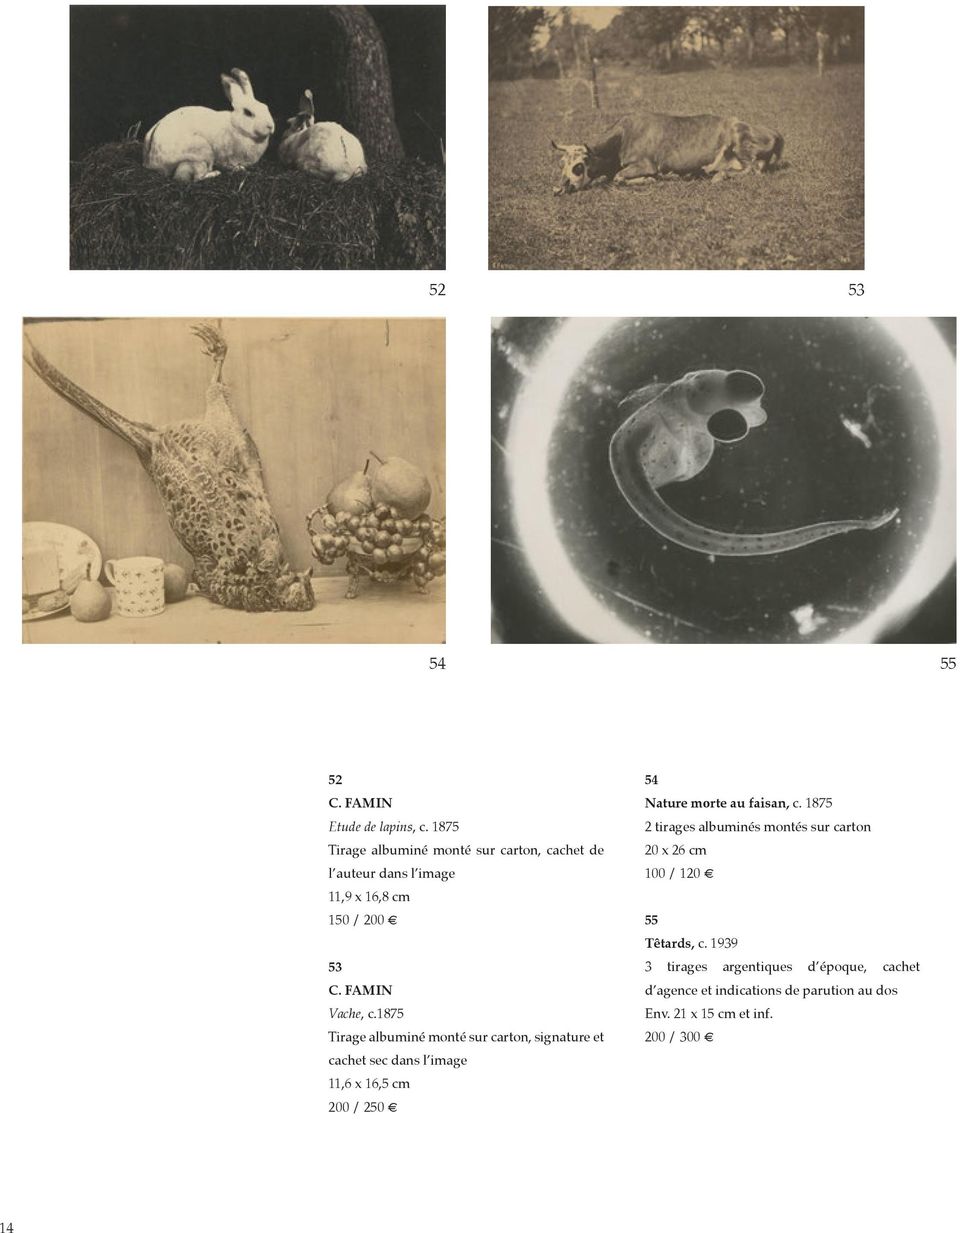 1875 Tirage albuminé monté sur carton, signature et cachet sec dans l image 11,6 x 16,5 cm 200 / 250 54 Nature morte au